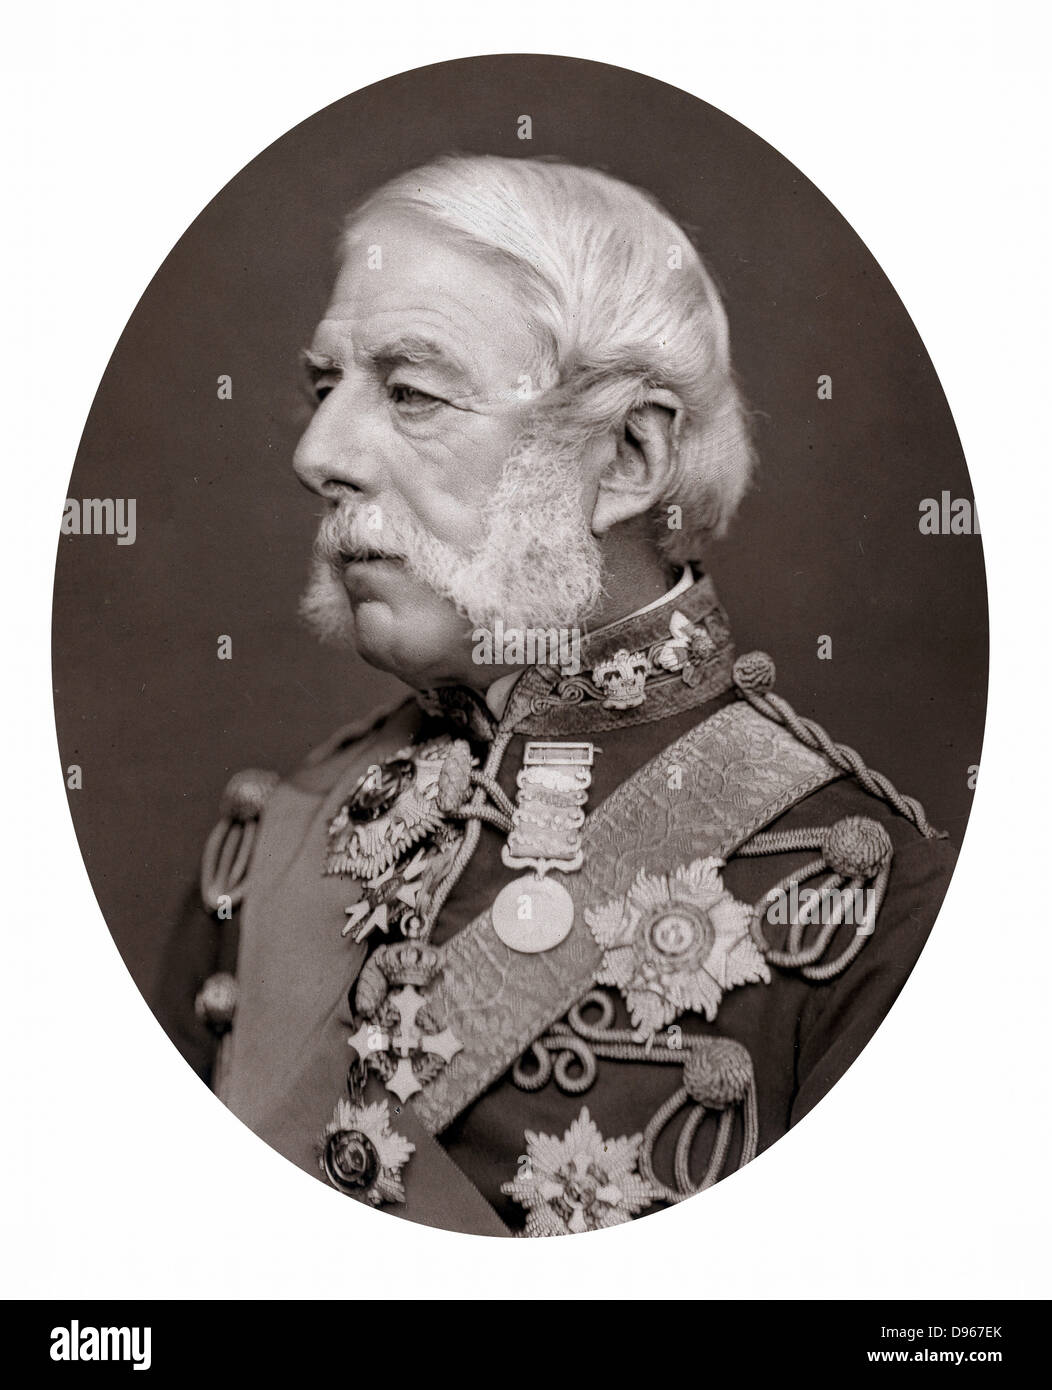 Richard Airey, Baron Airey (1803-1881) Englischer Soldat; Quartermaster General auf die Krim Armee 1854-1855; Gouverneur von Gibraltar 1865-1870. Foto veröffentlicht 1875. Woodburytype Stockfoto